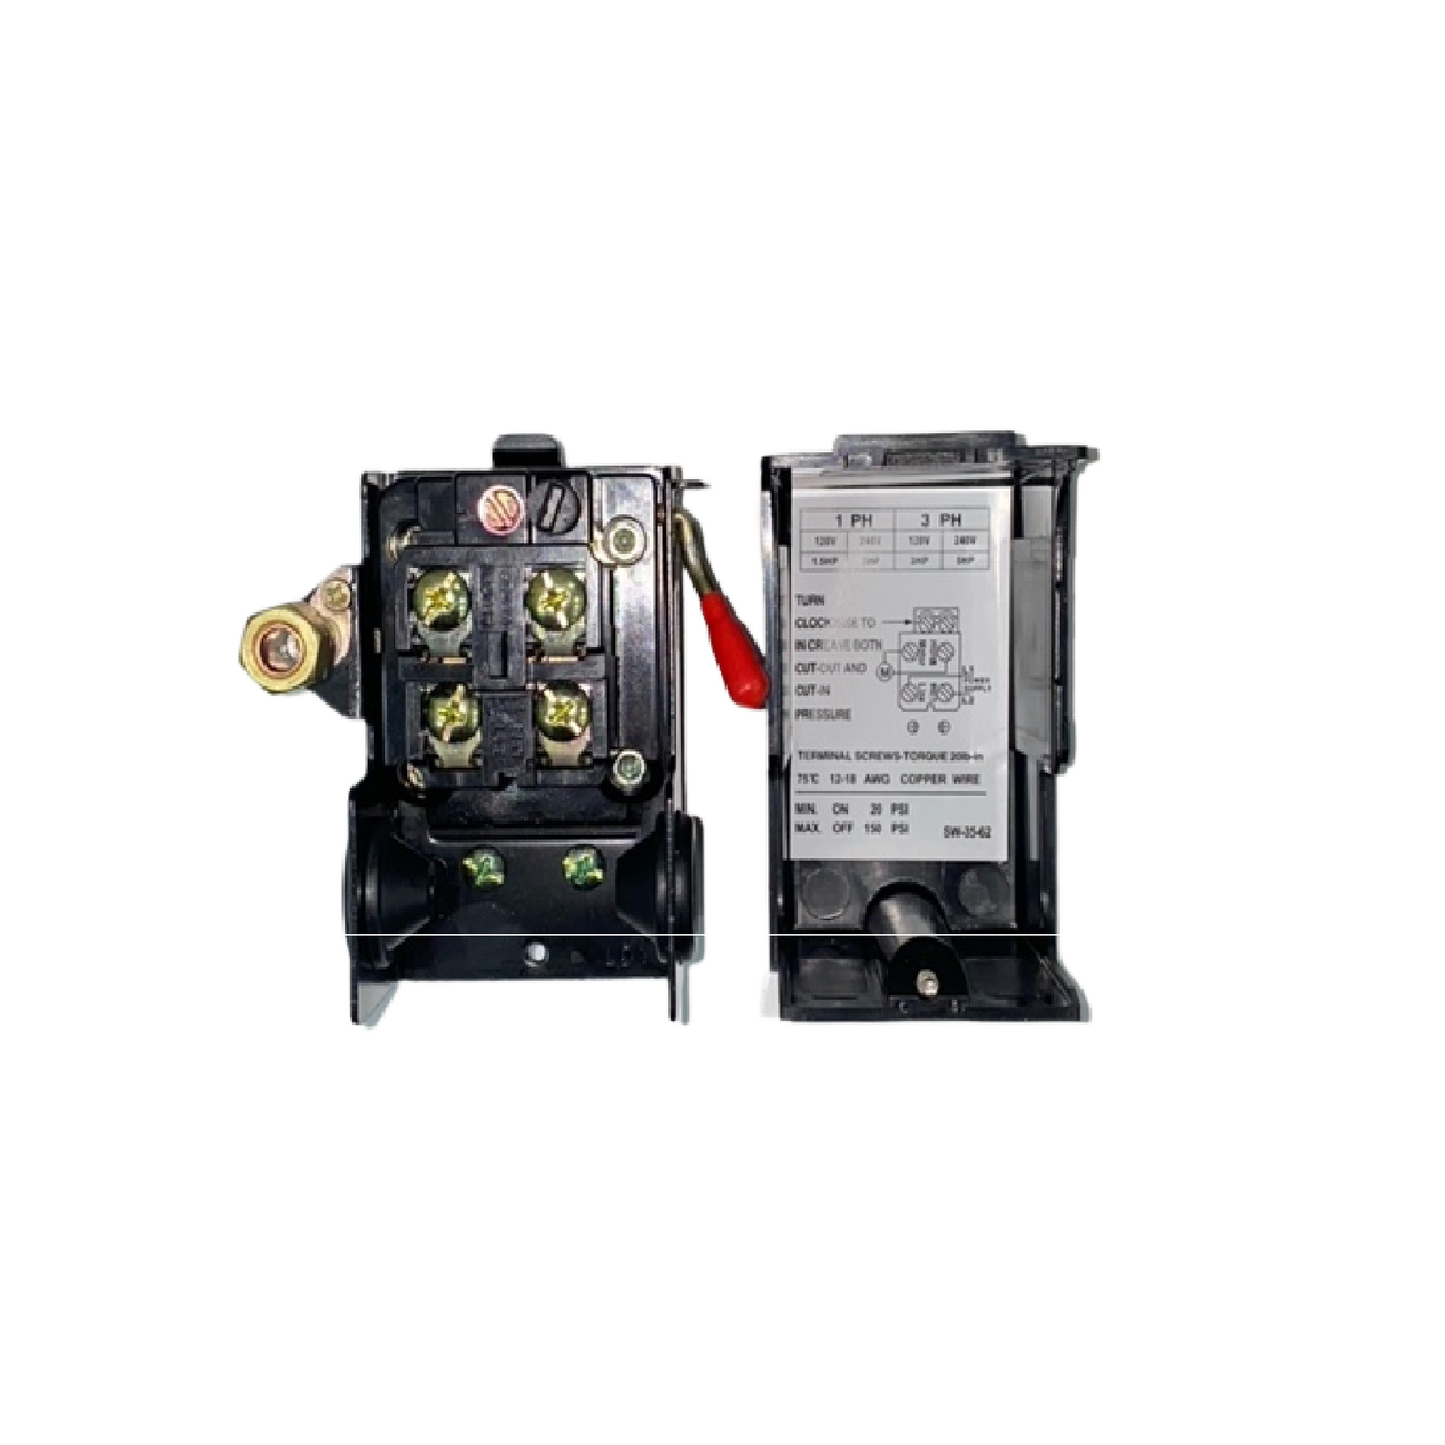 PSW-3562 Interrupteur de pression Universel 95-125 psi, 4 ports, 1/4 npt avec levier